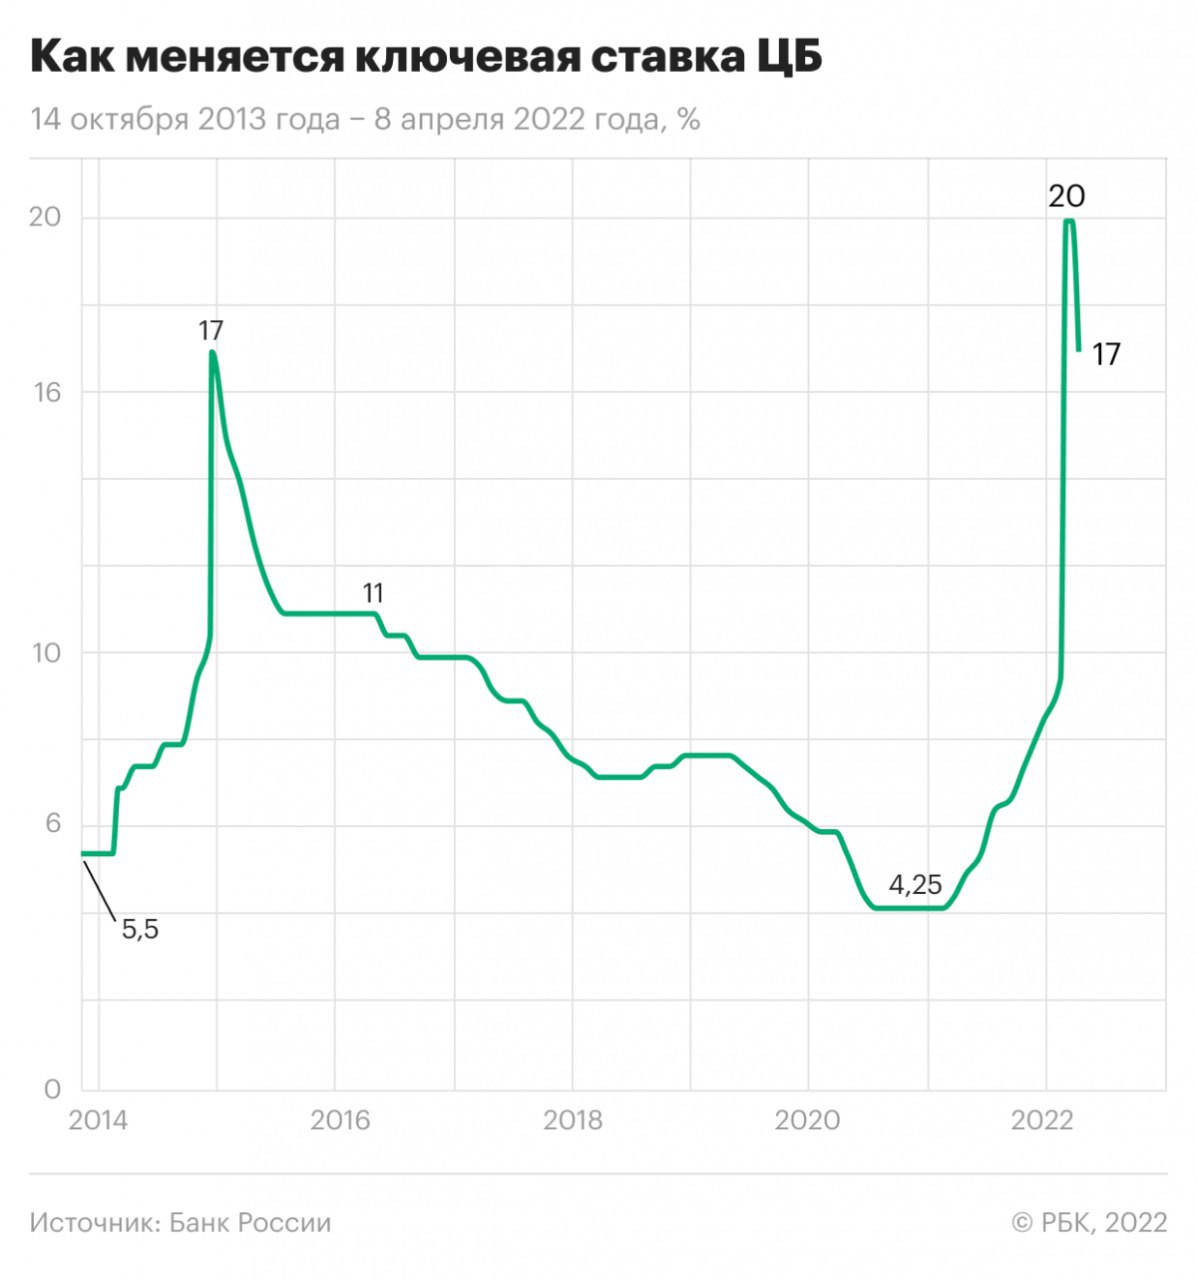 Как менялась ключевая ставка ЦБ РФ